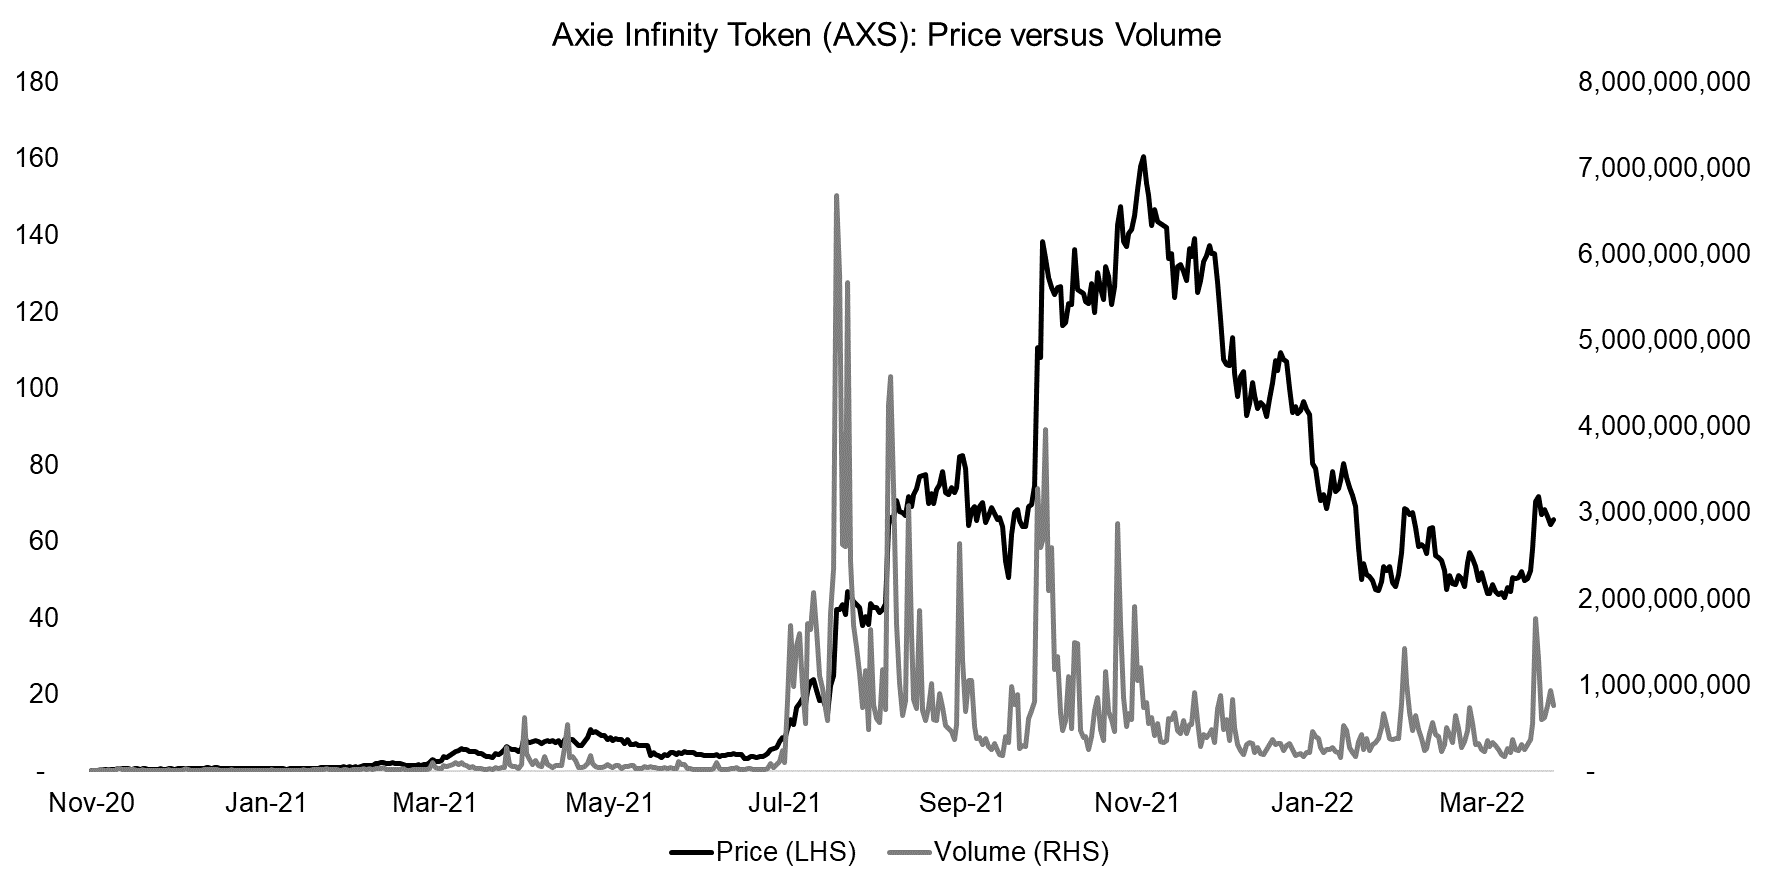 Axie Infinity Token (AXS) Price versus Volume